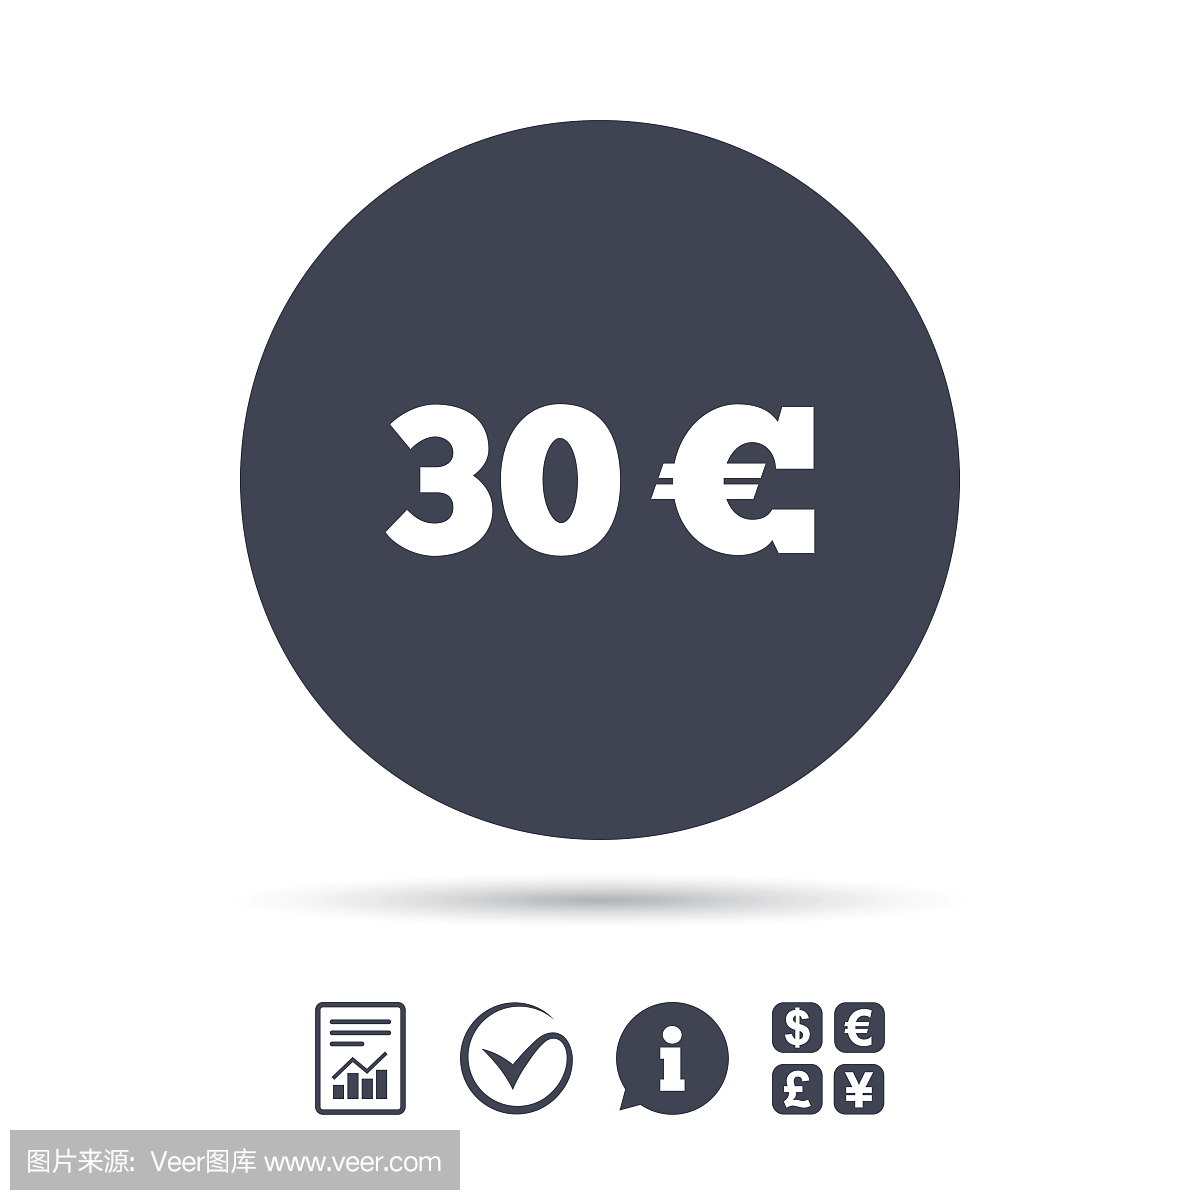 30欧元标志图标。欧元货币符号。